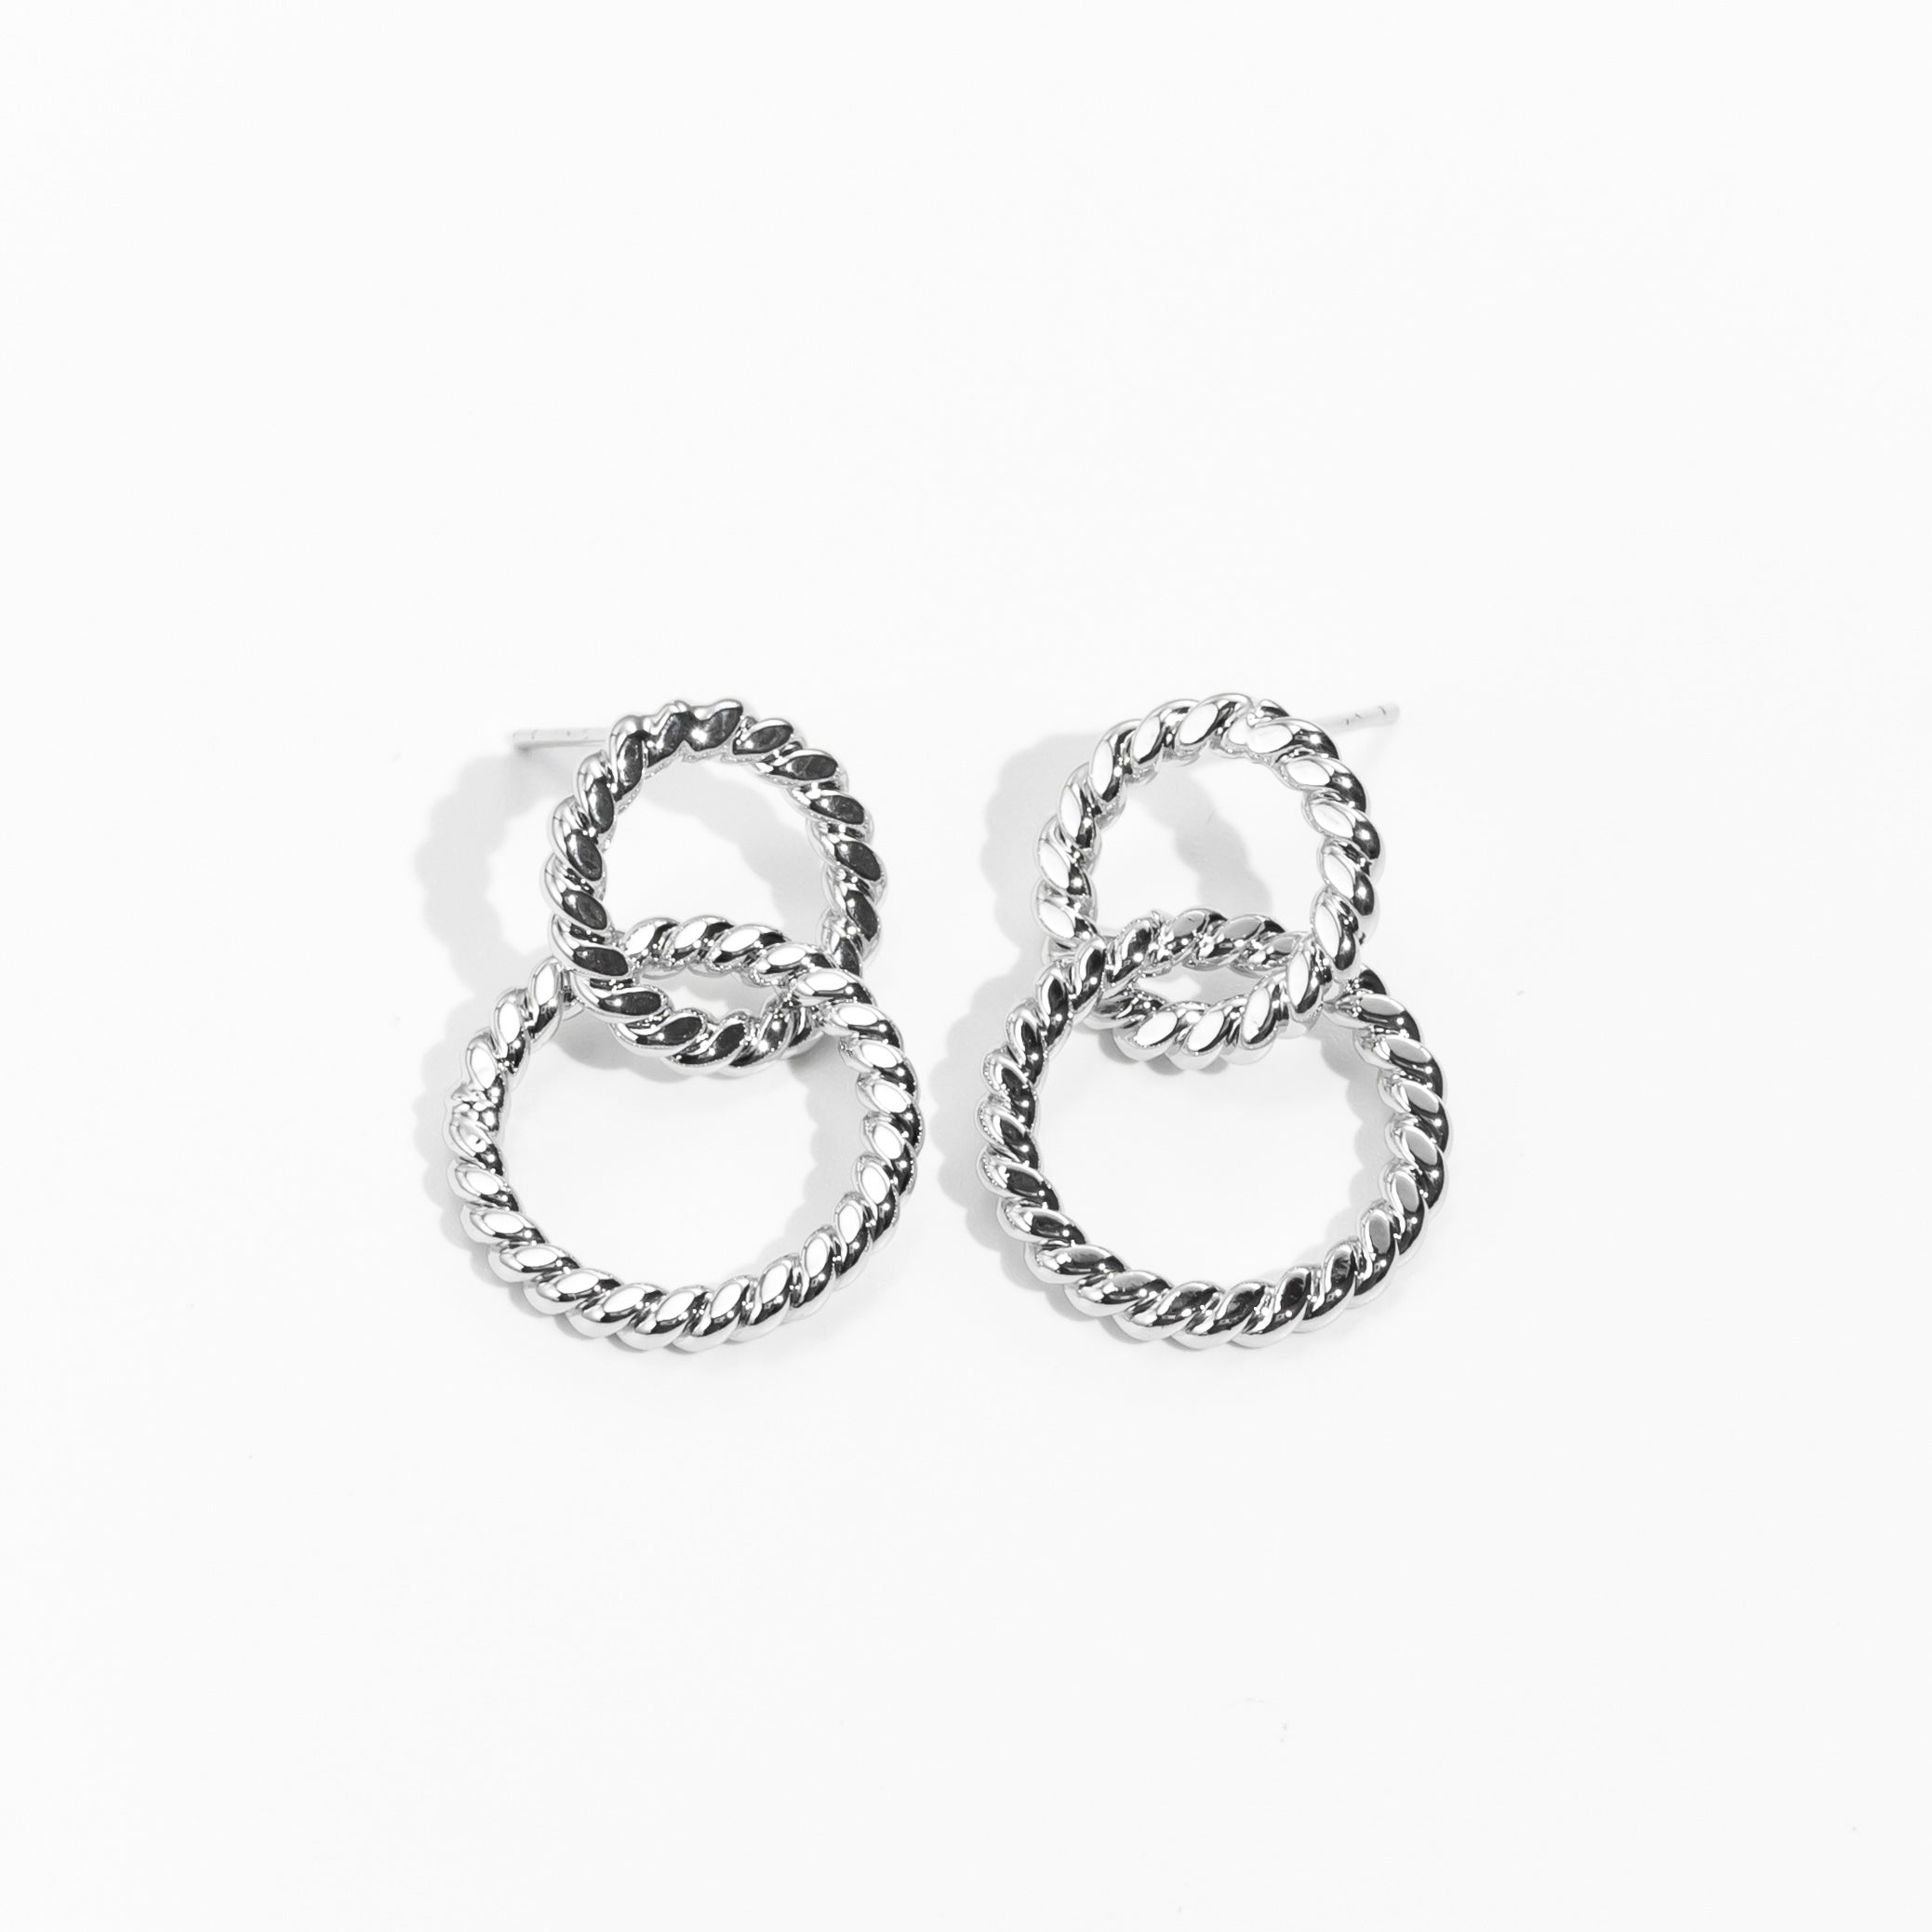 Silver double ring earrings